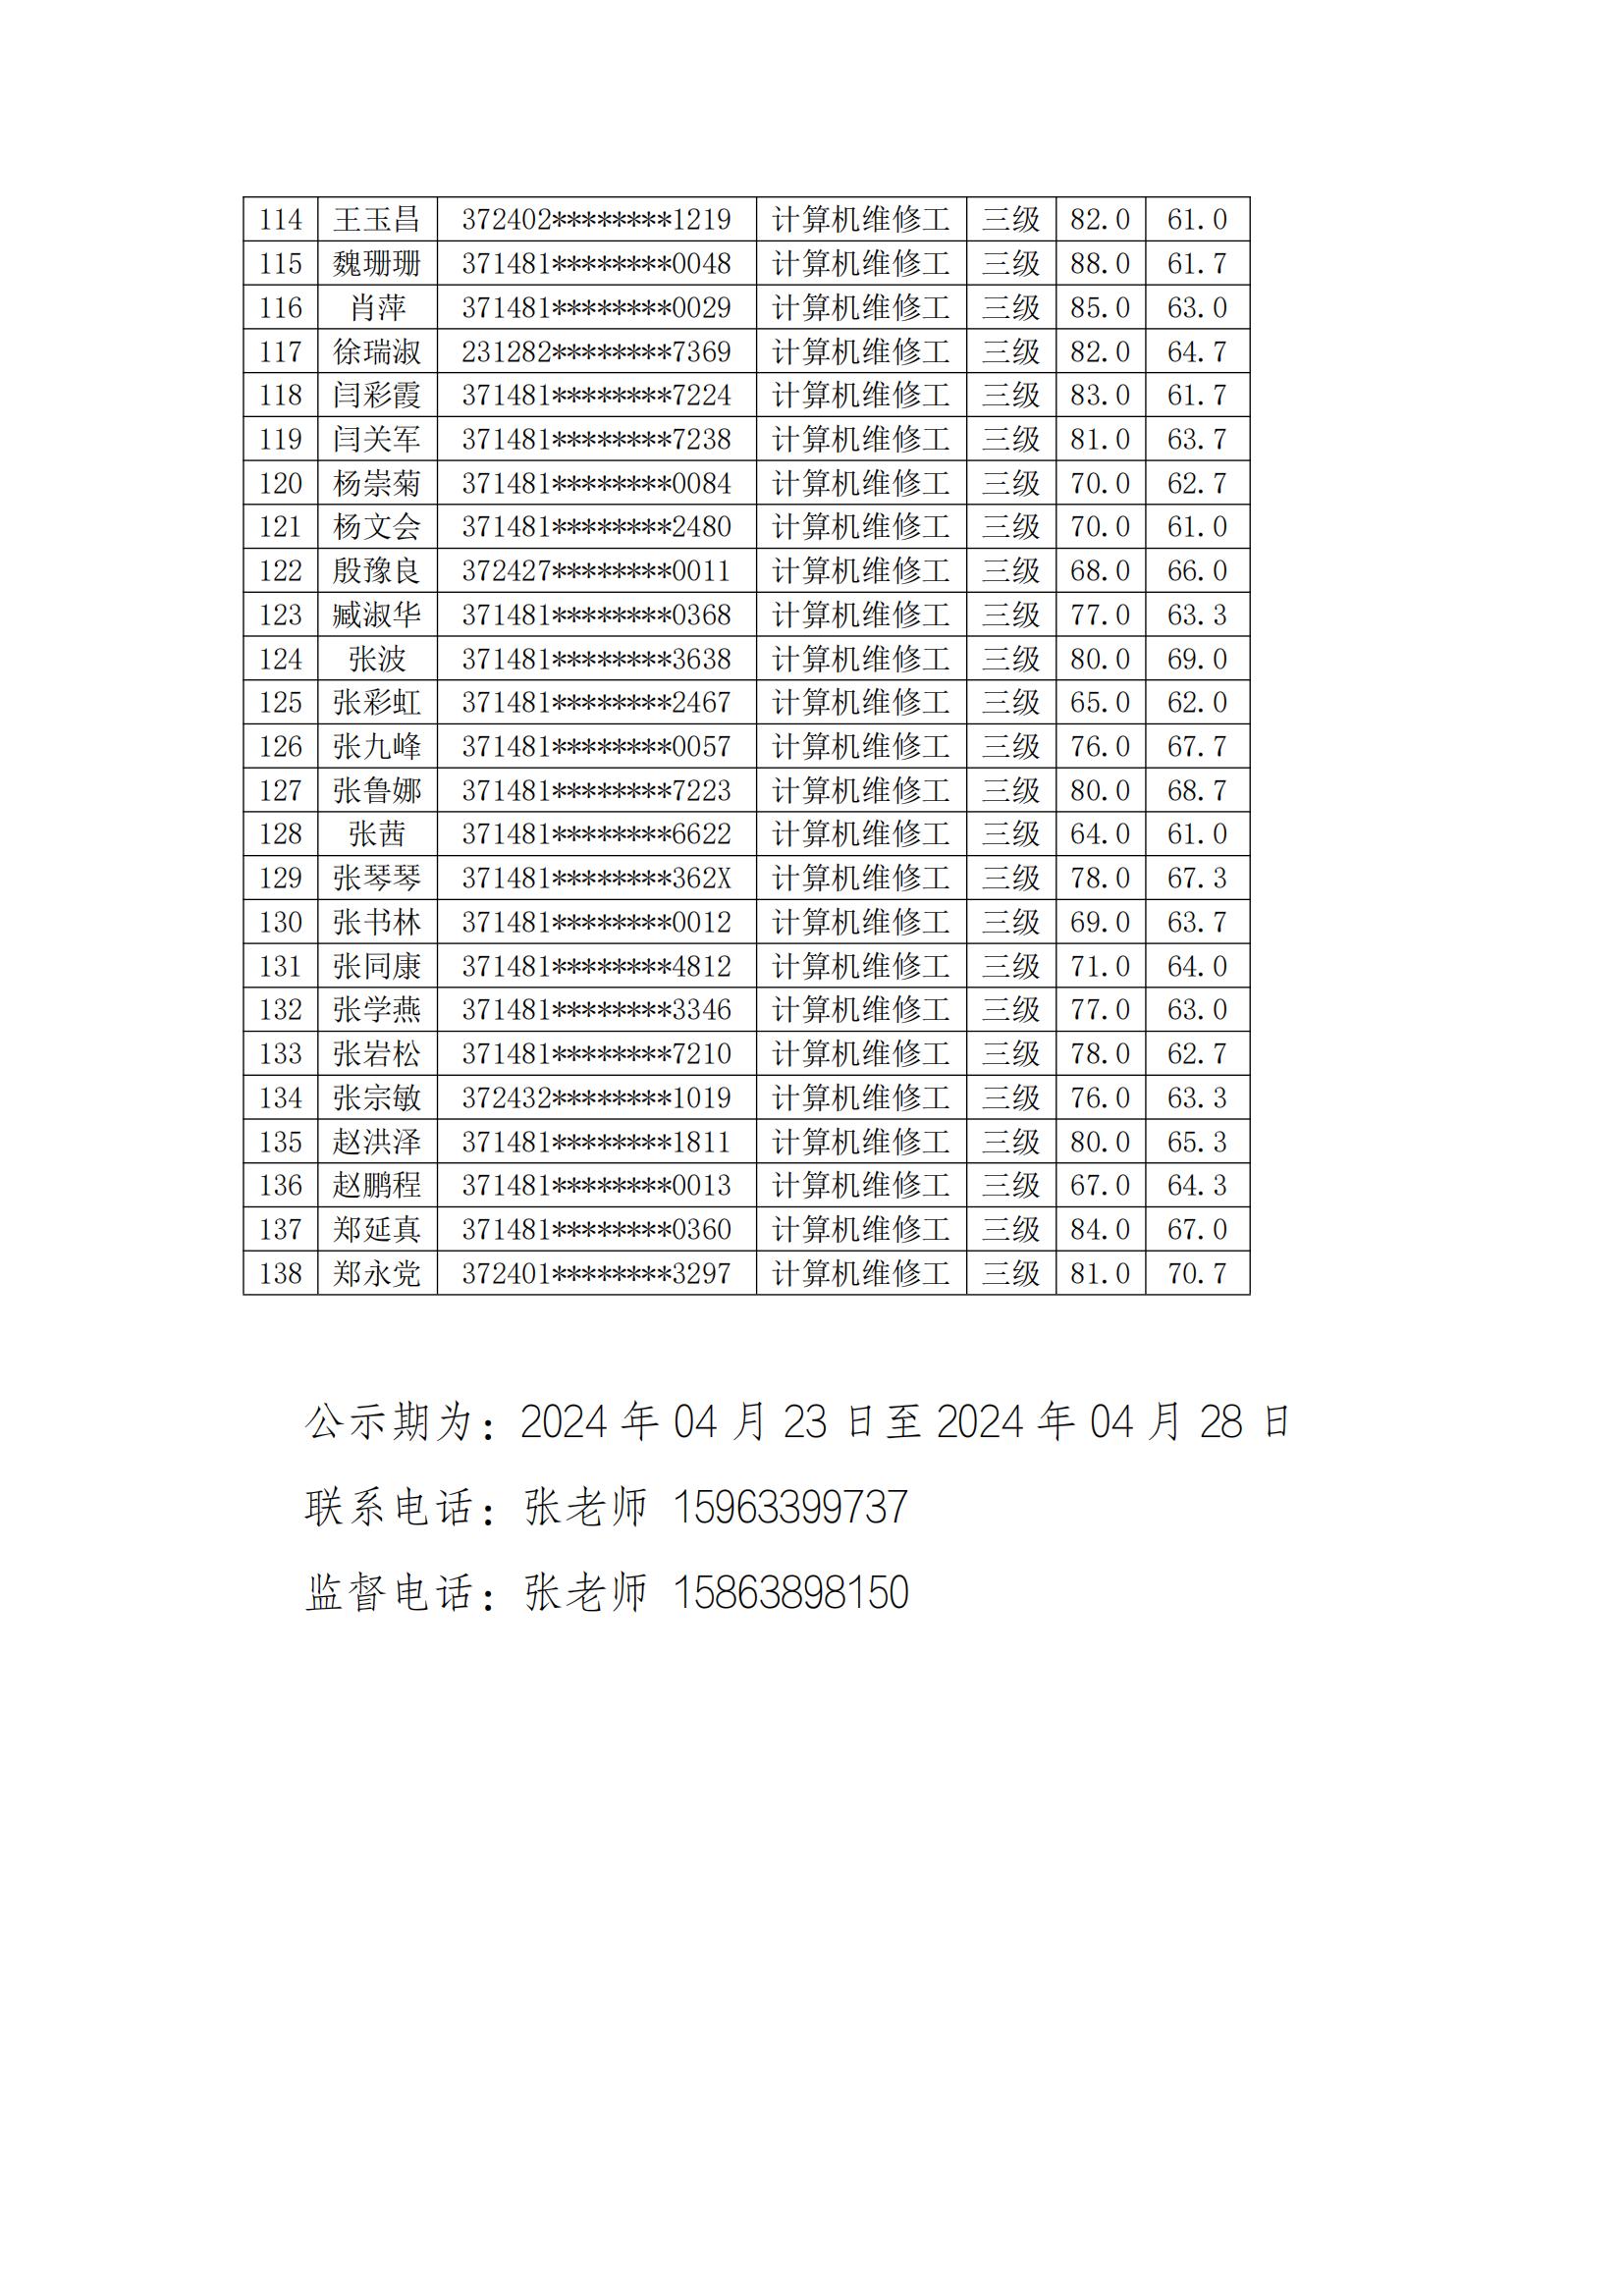 庆云县职业中等专业学校20240420第2批职业技能等级评价考试成绩合格人员公示_03.jpg